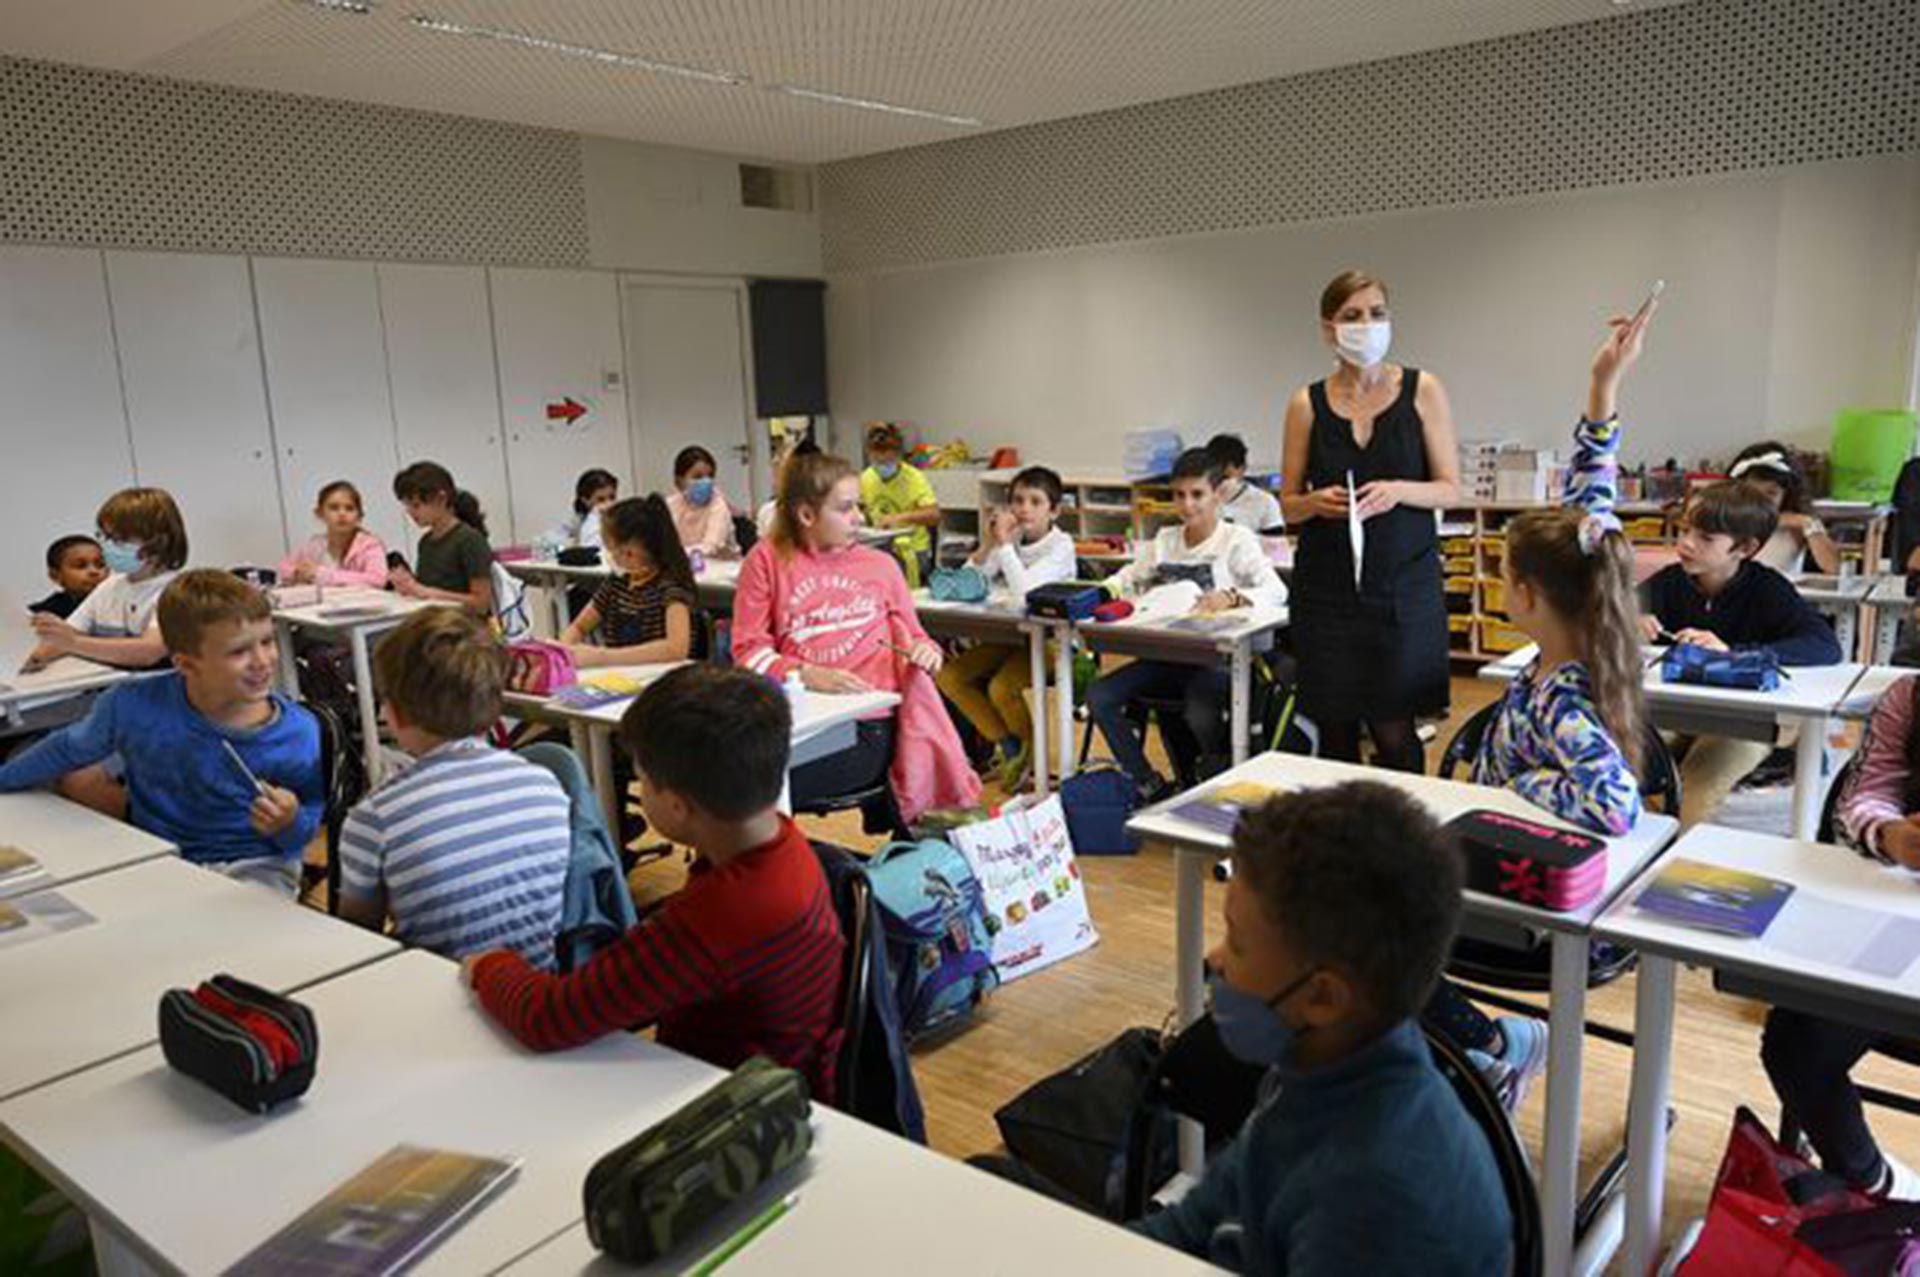 Las escuelas en Francia permanecen abiertas, pese al rebrote de COVID-19